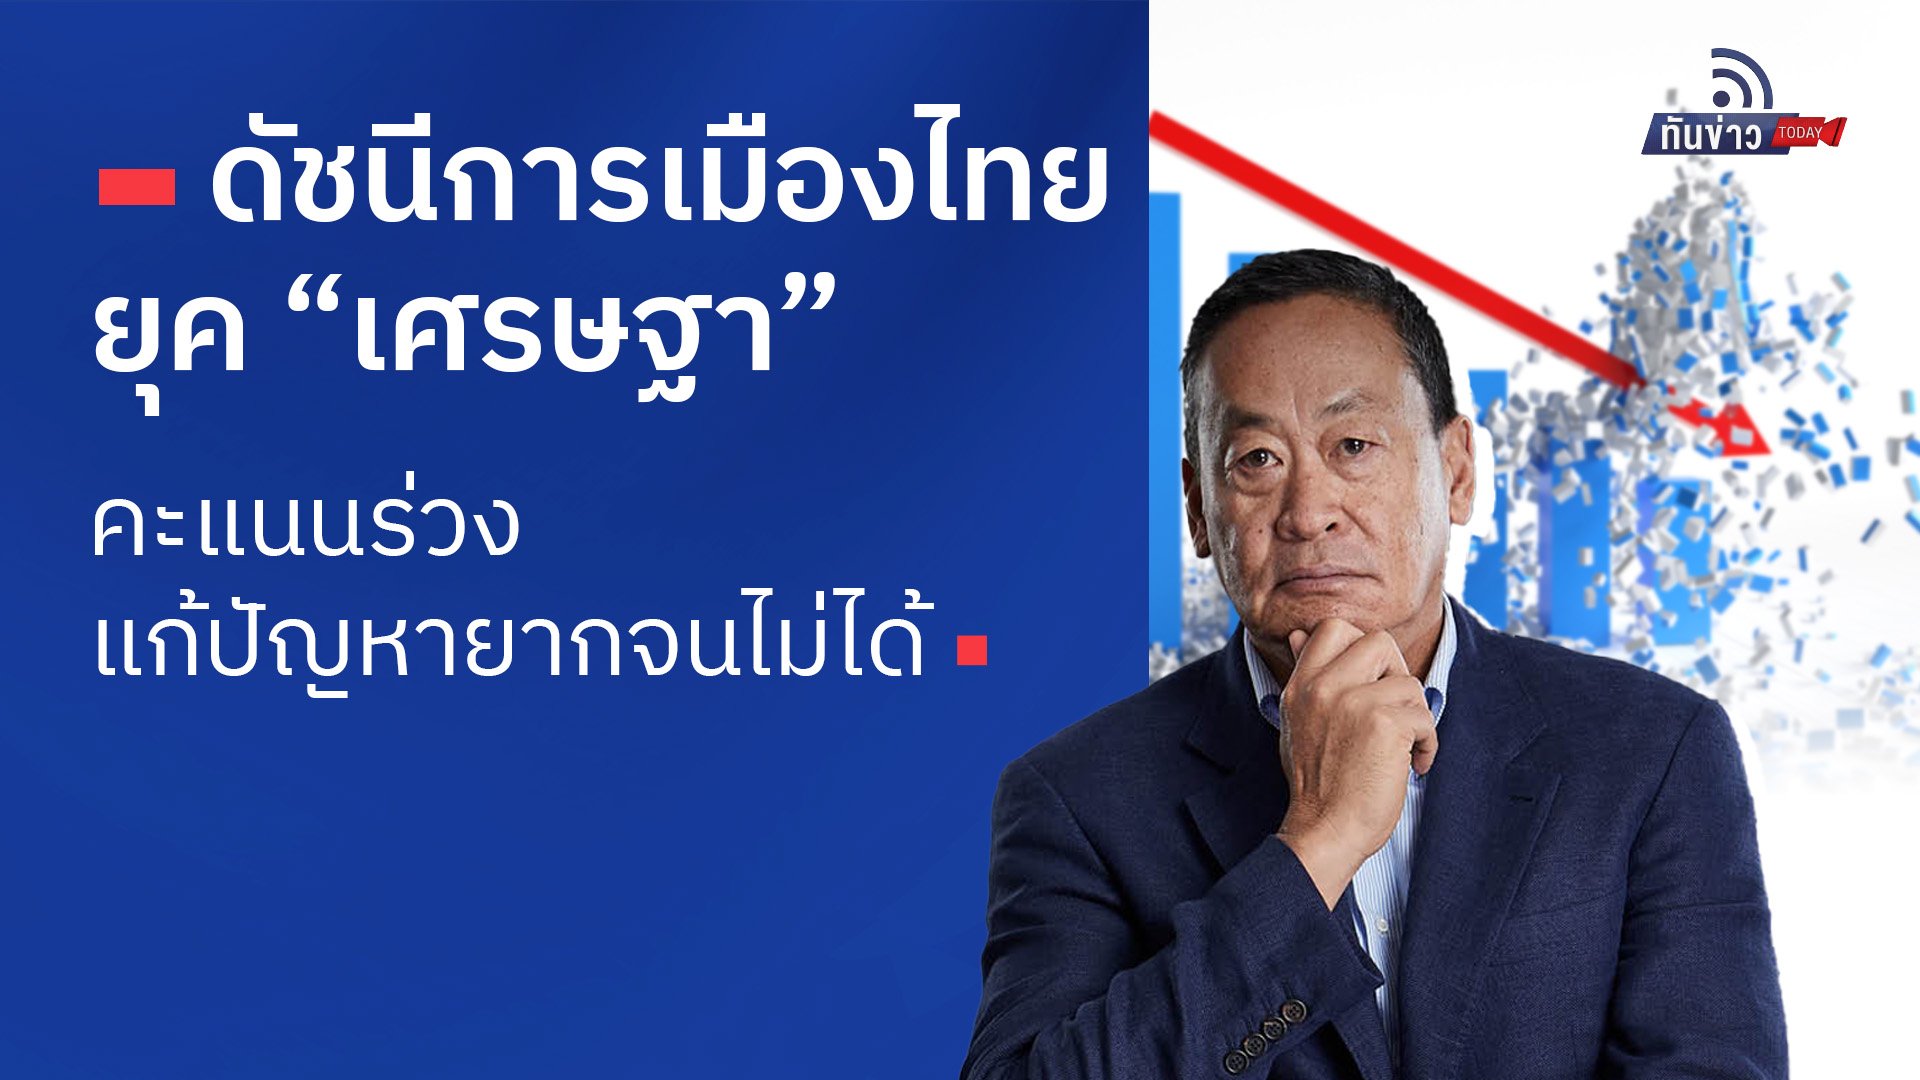 ดัชนีการเมืองไทยยุค “เศรษฐา” คะแนนร่วง แก้ปัญหายากจนไม่ได้